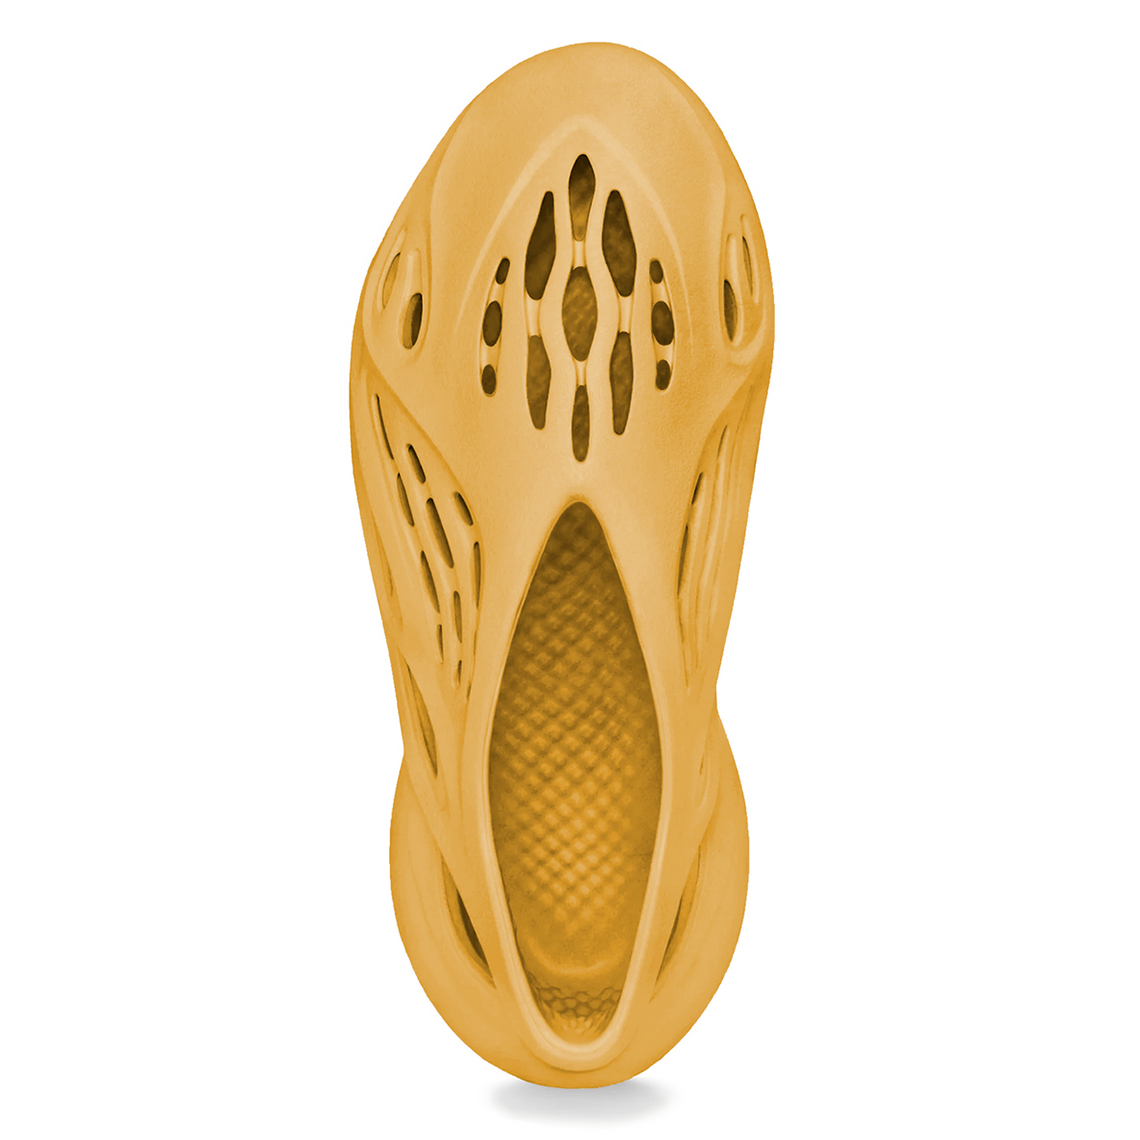 Adidas Yeezy Foam Runner “Ochre” Släpps I Juli 2021 - Sneakersanalys